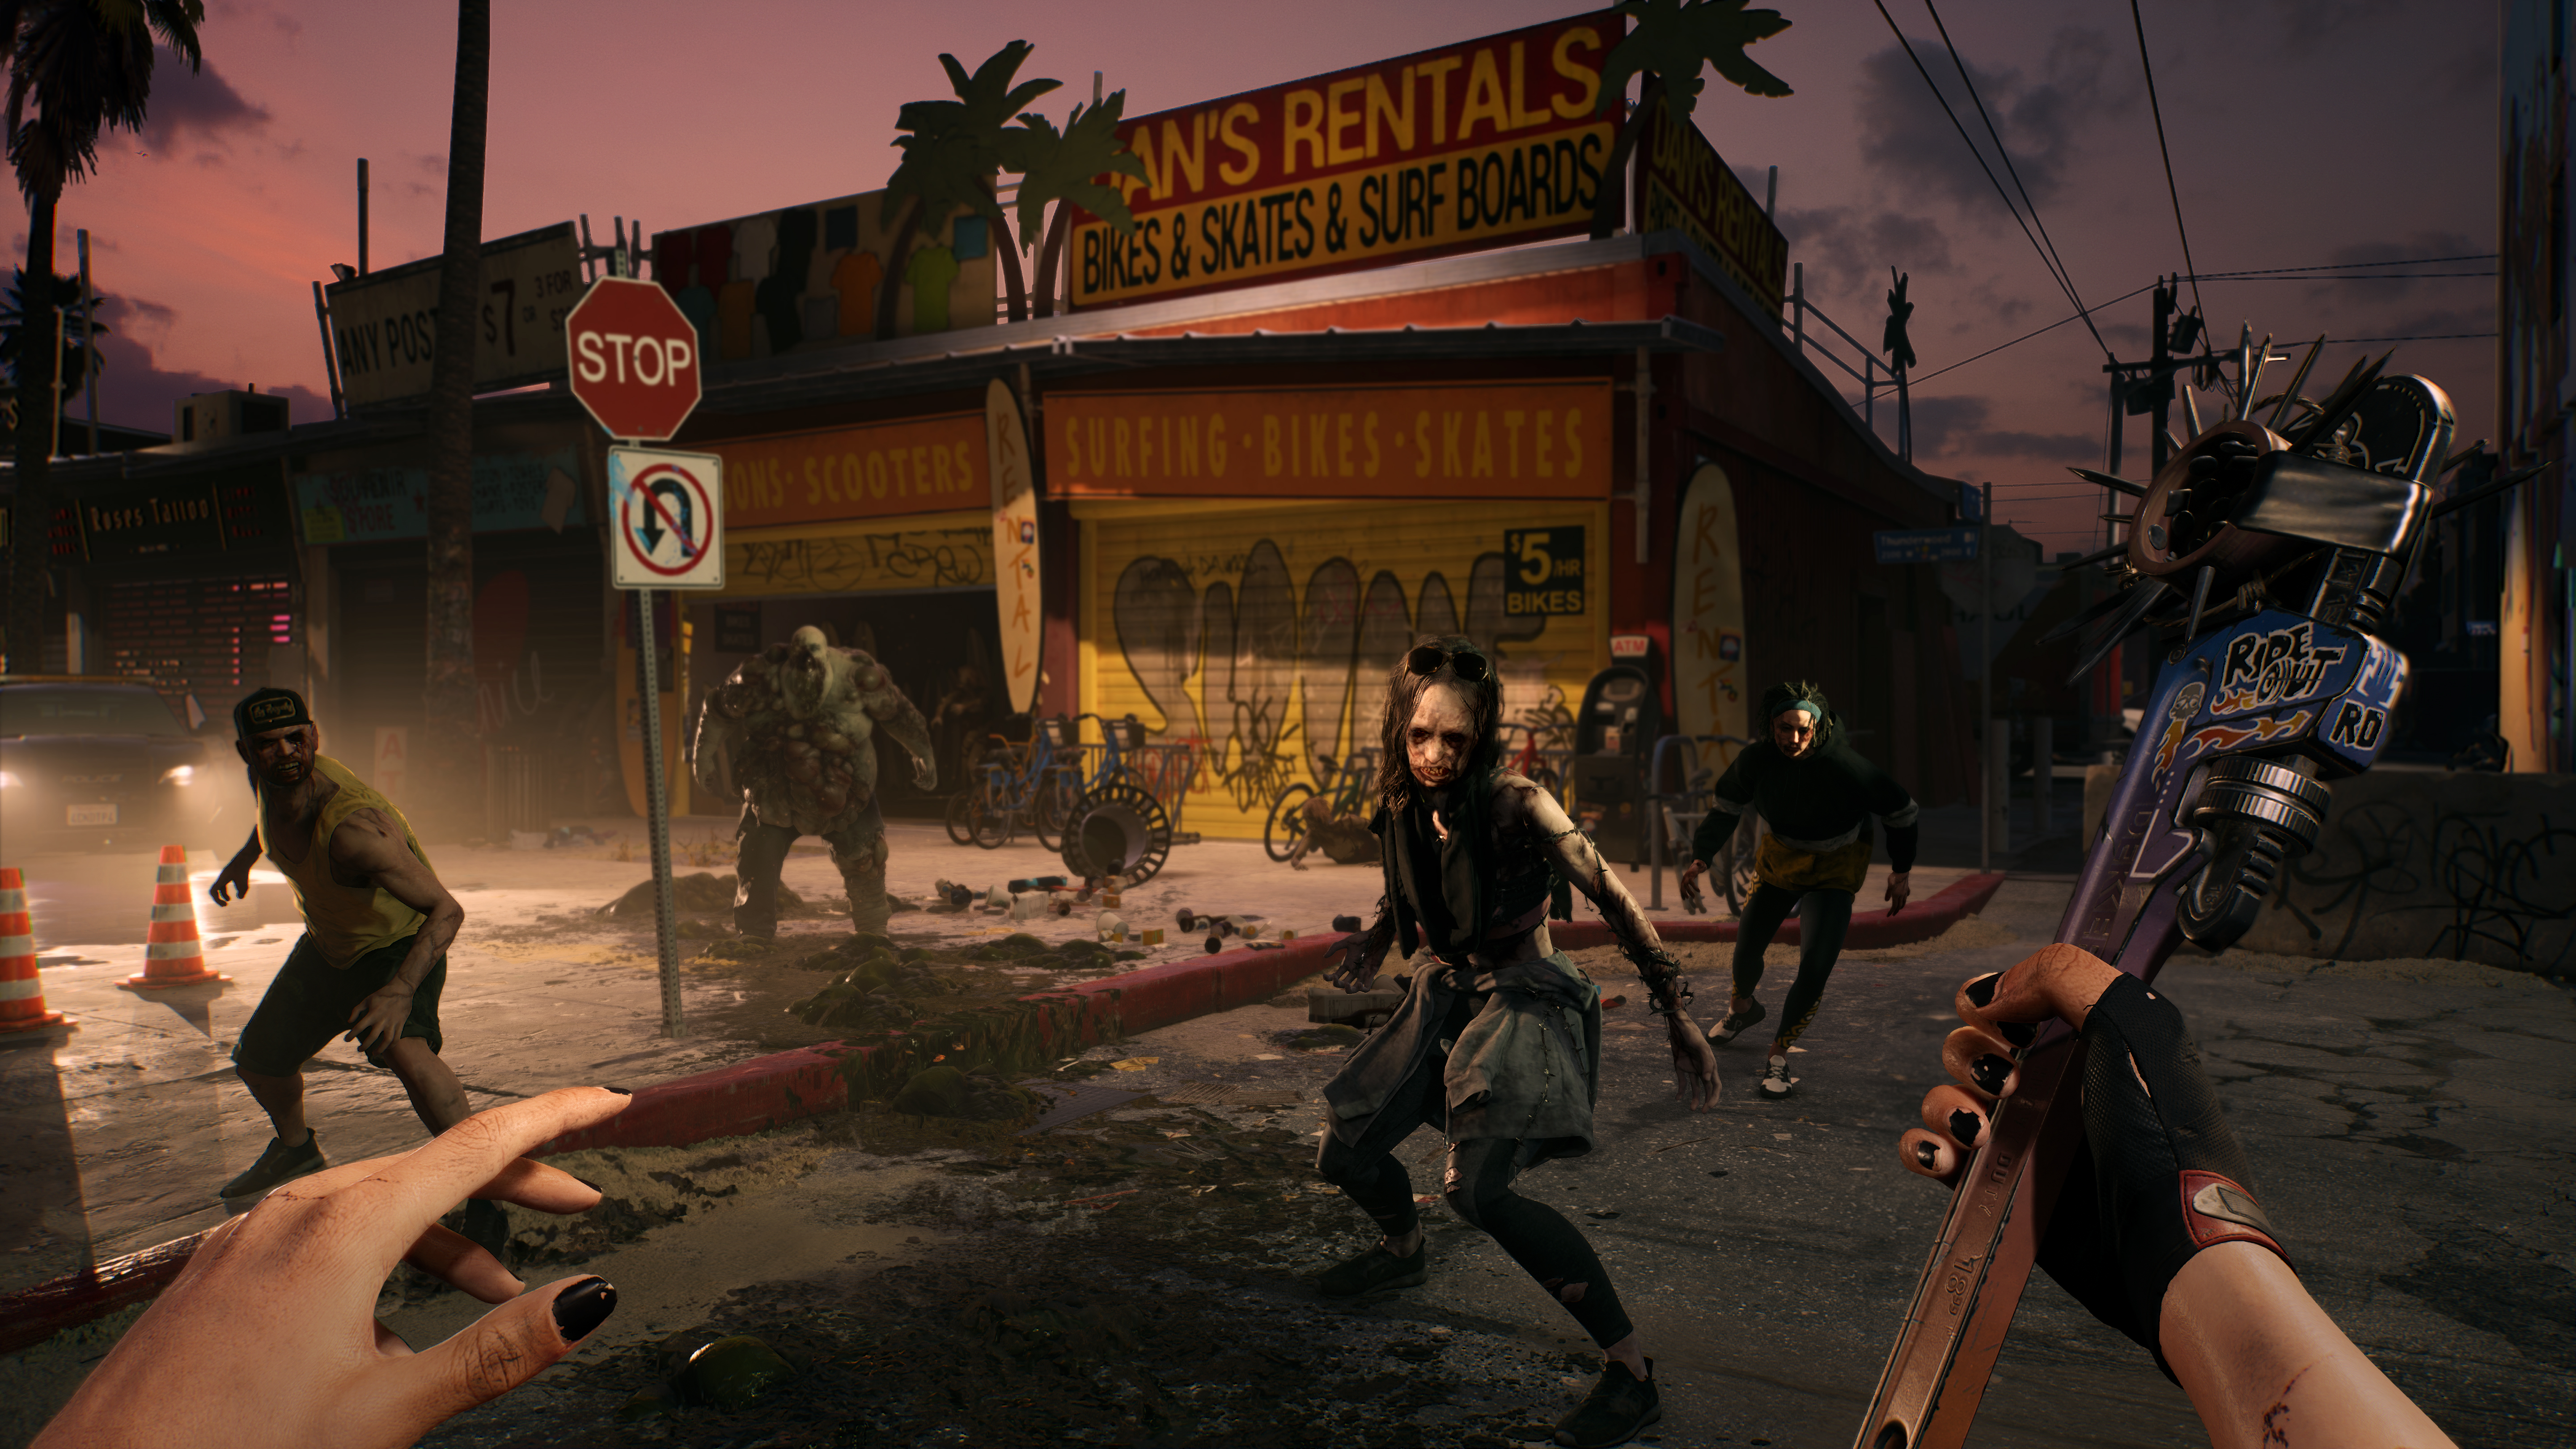 Dead Island ganha versão remasterizada para PS4, Xbox One e PC